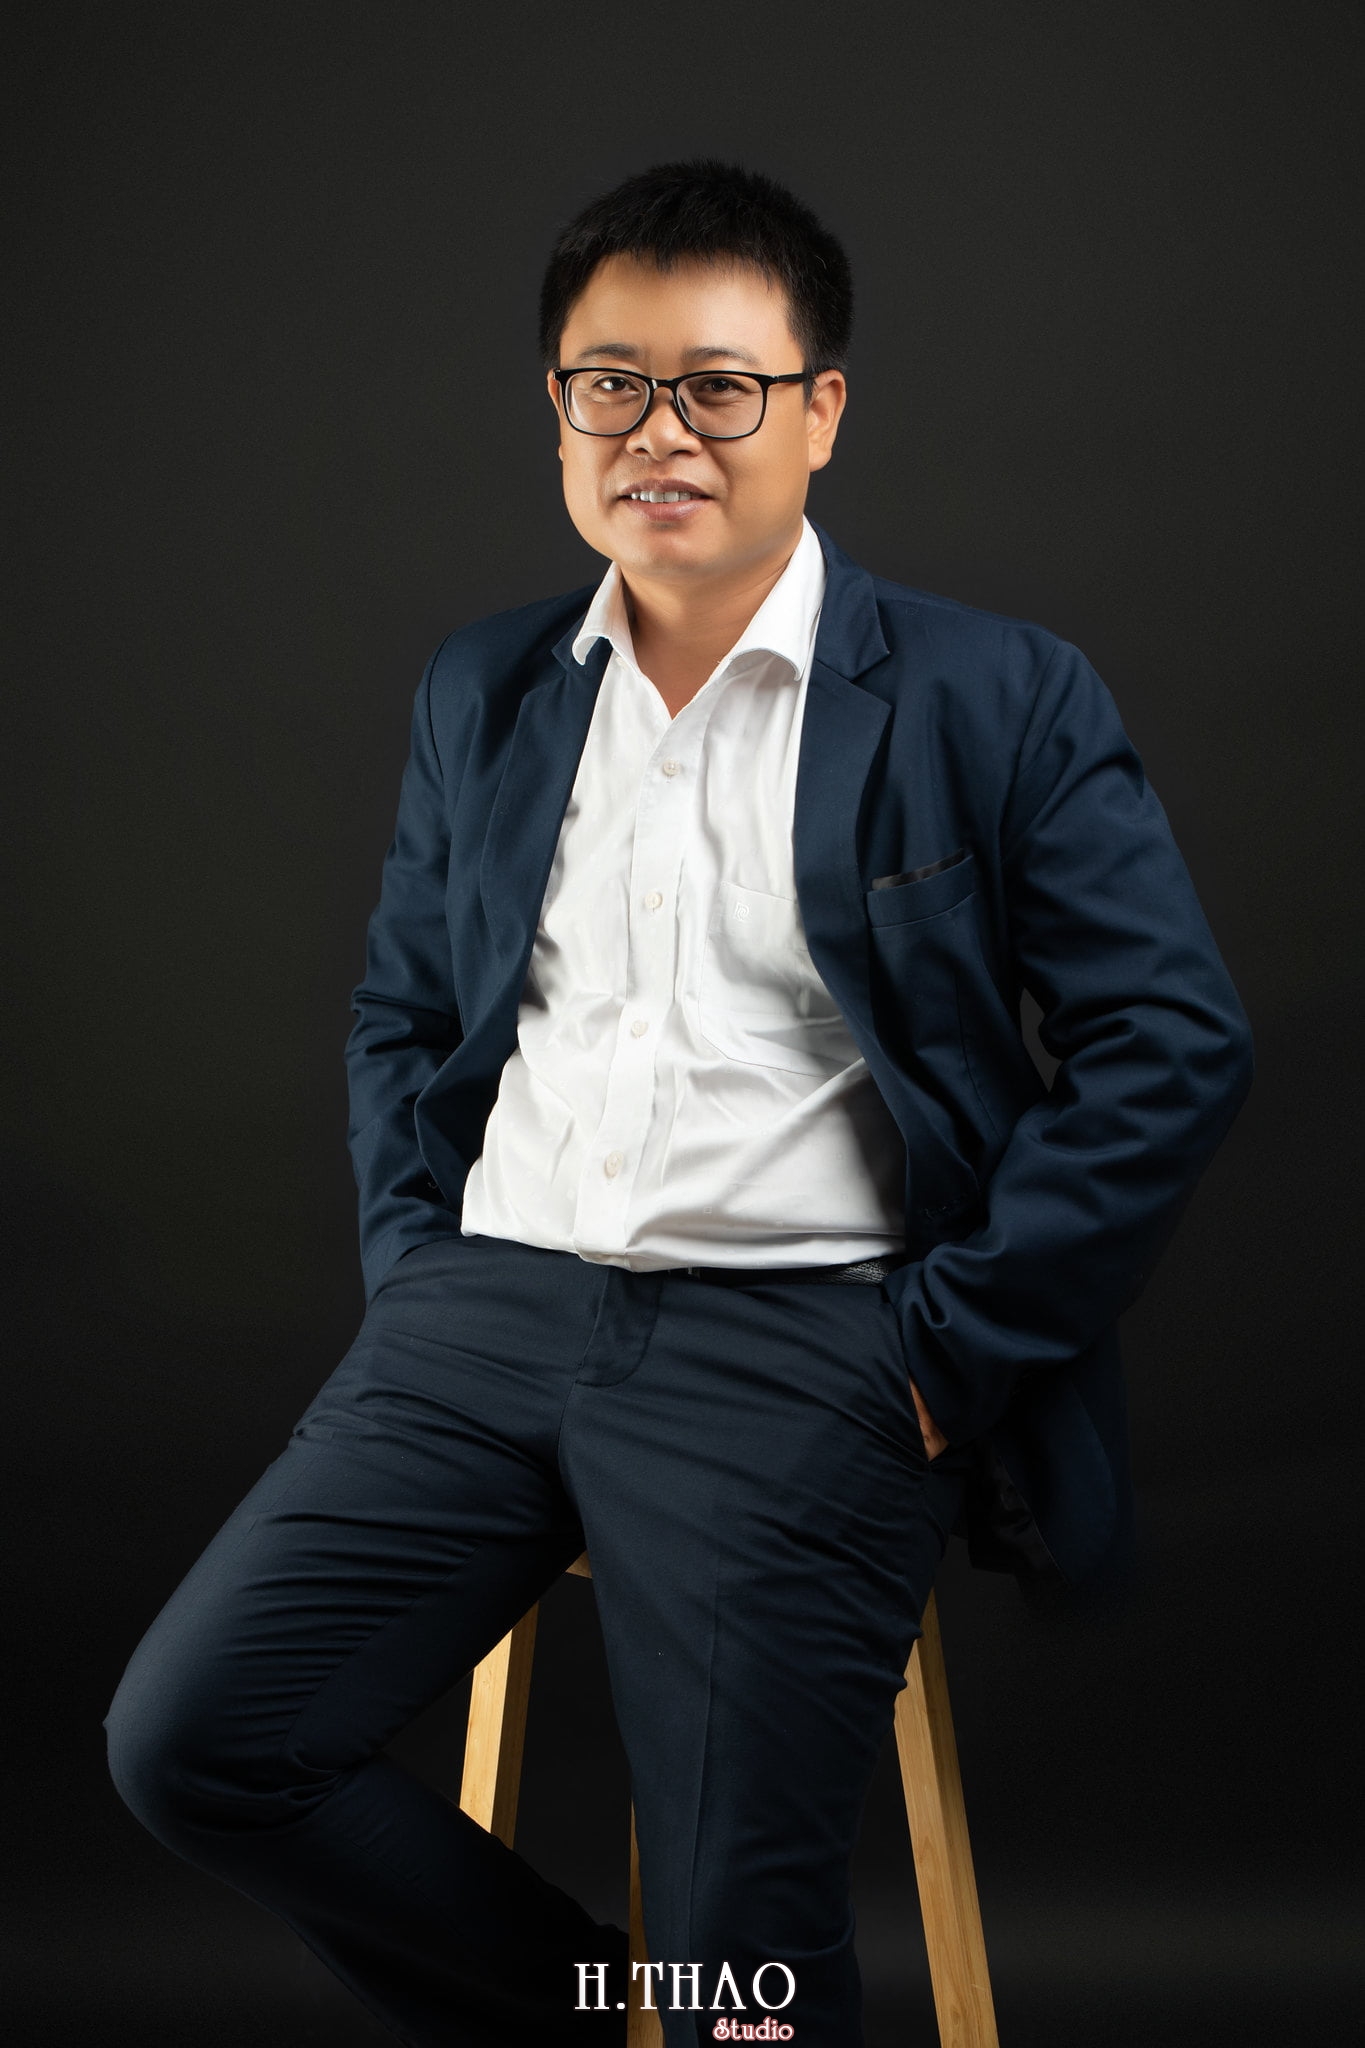 Giam doc Hoang 2 - 35 cách tạo dáng chụp ảnh doanh nhân chuyên nghiệp - HThao Studio